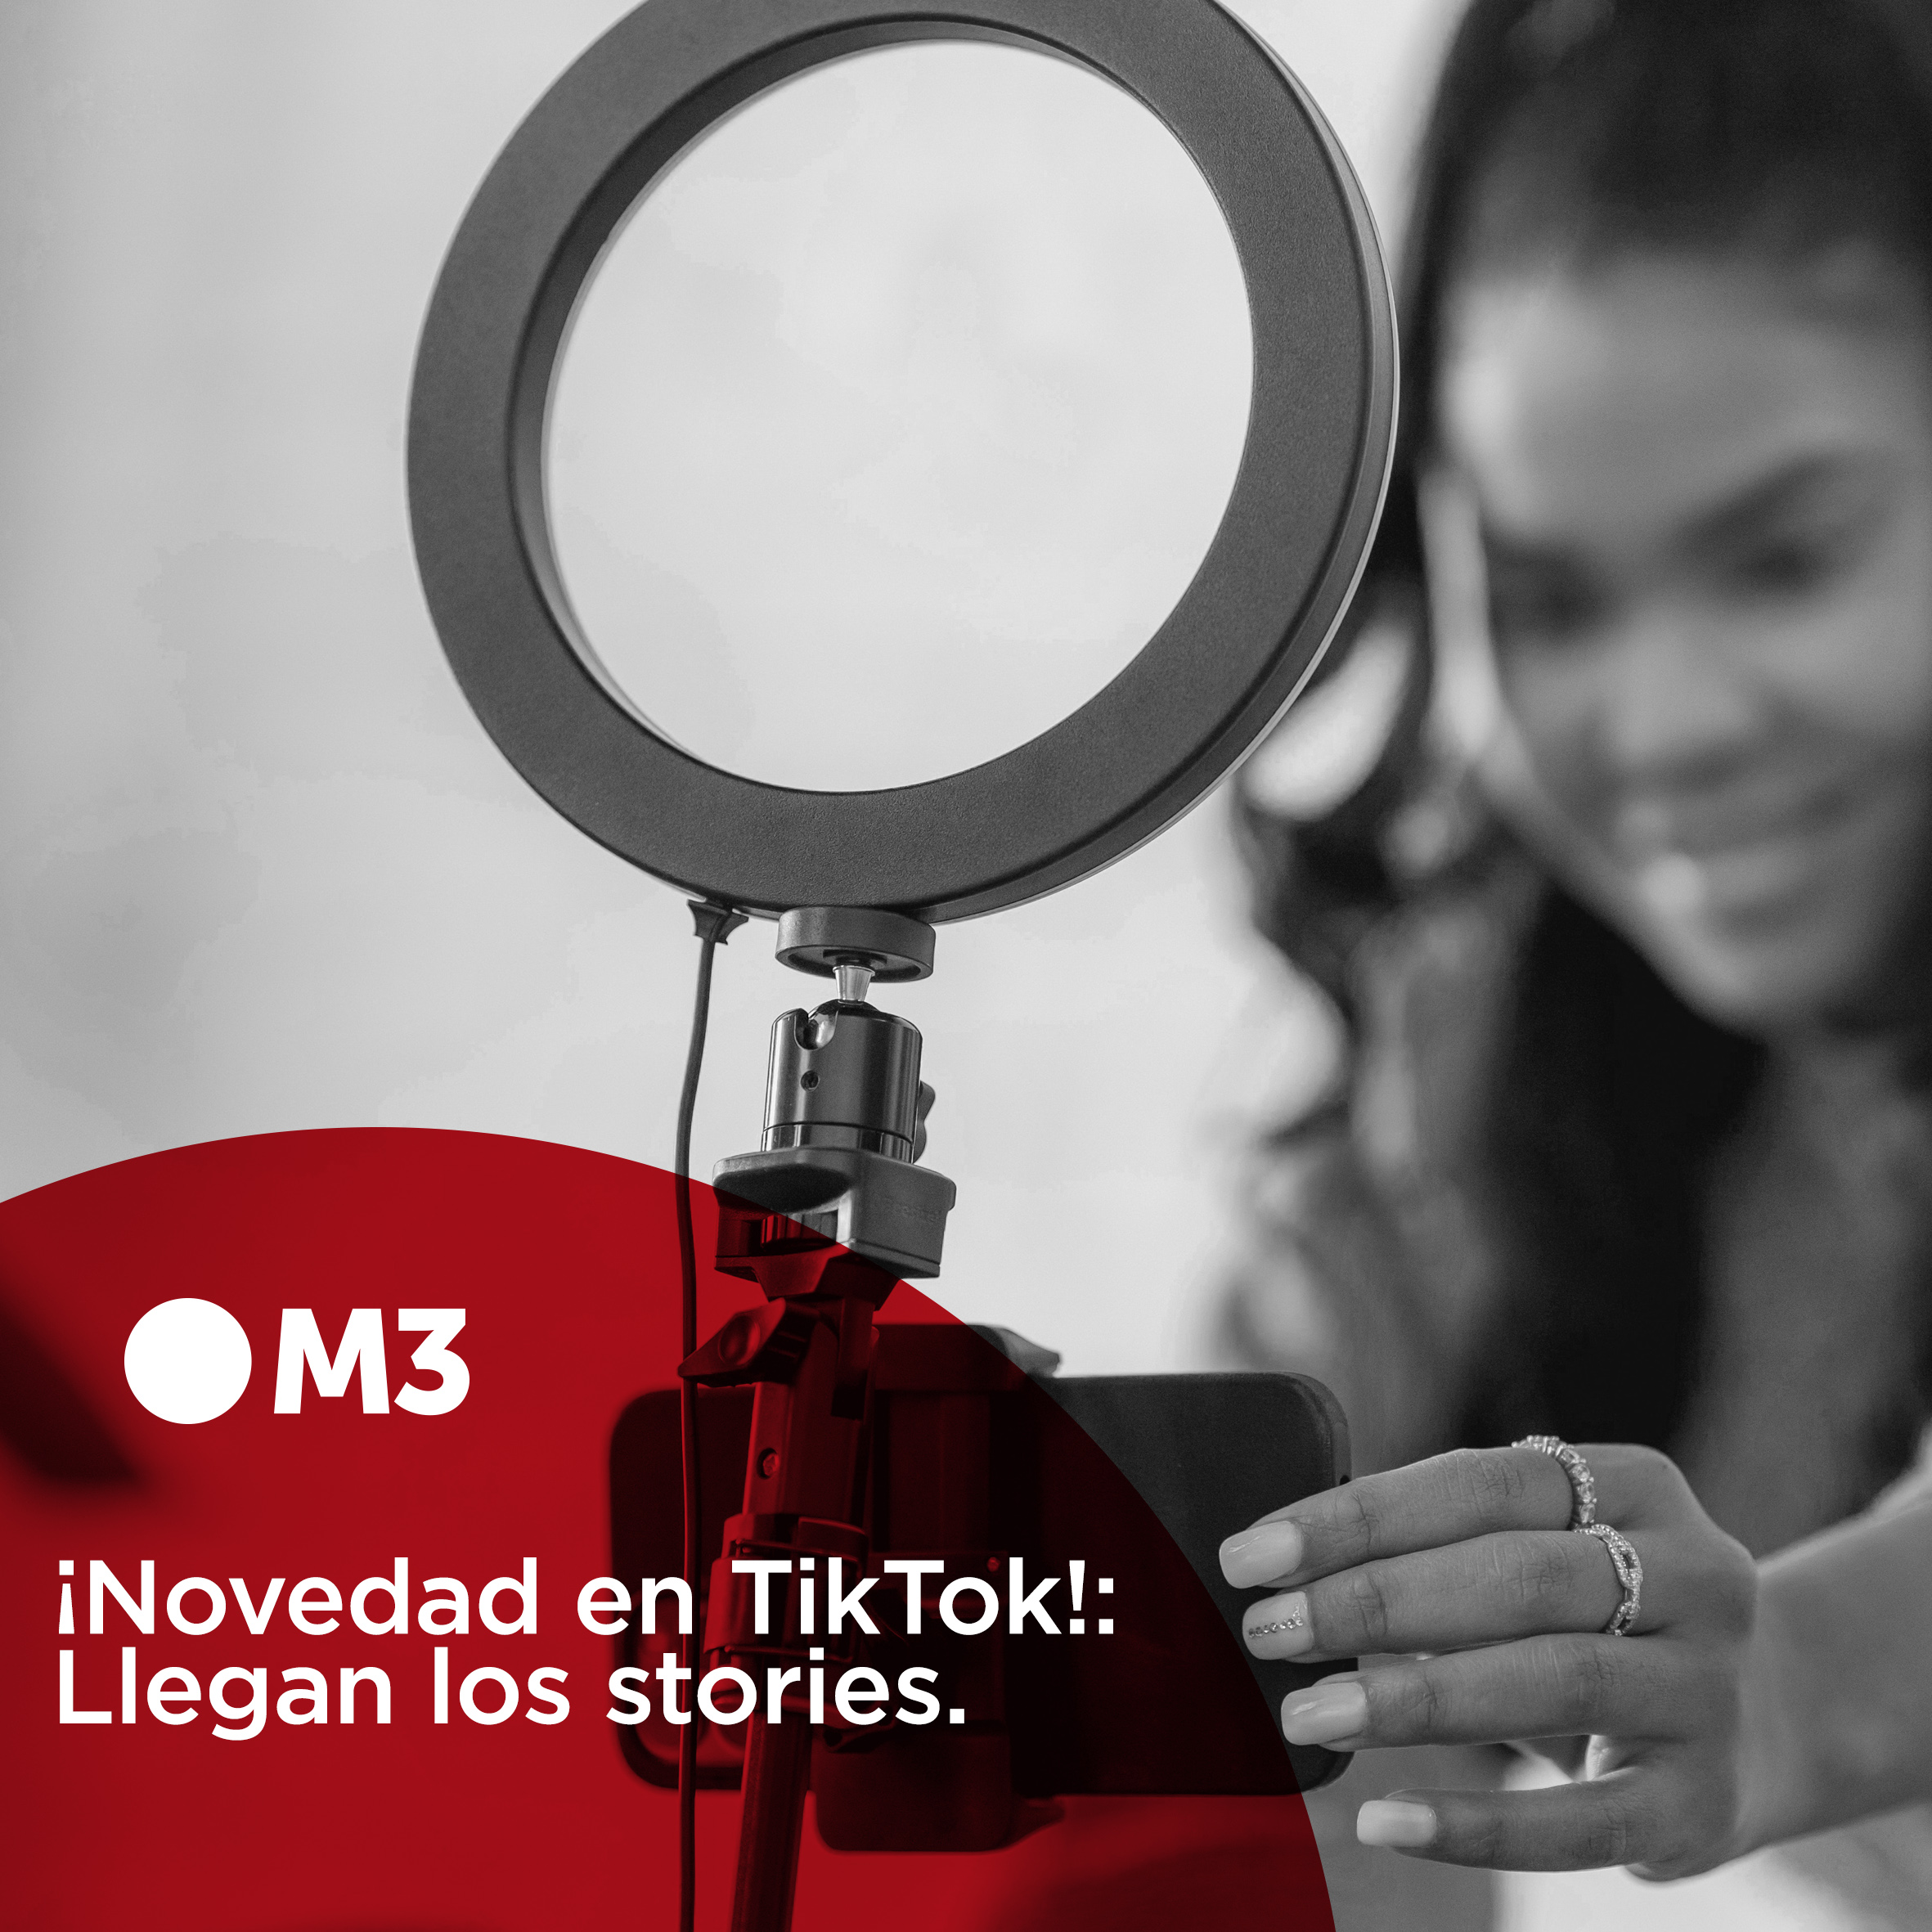 ¡Novedad en TikTok!: llegan los stories